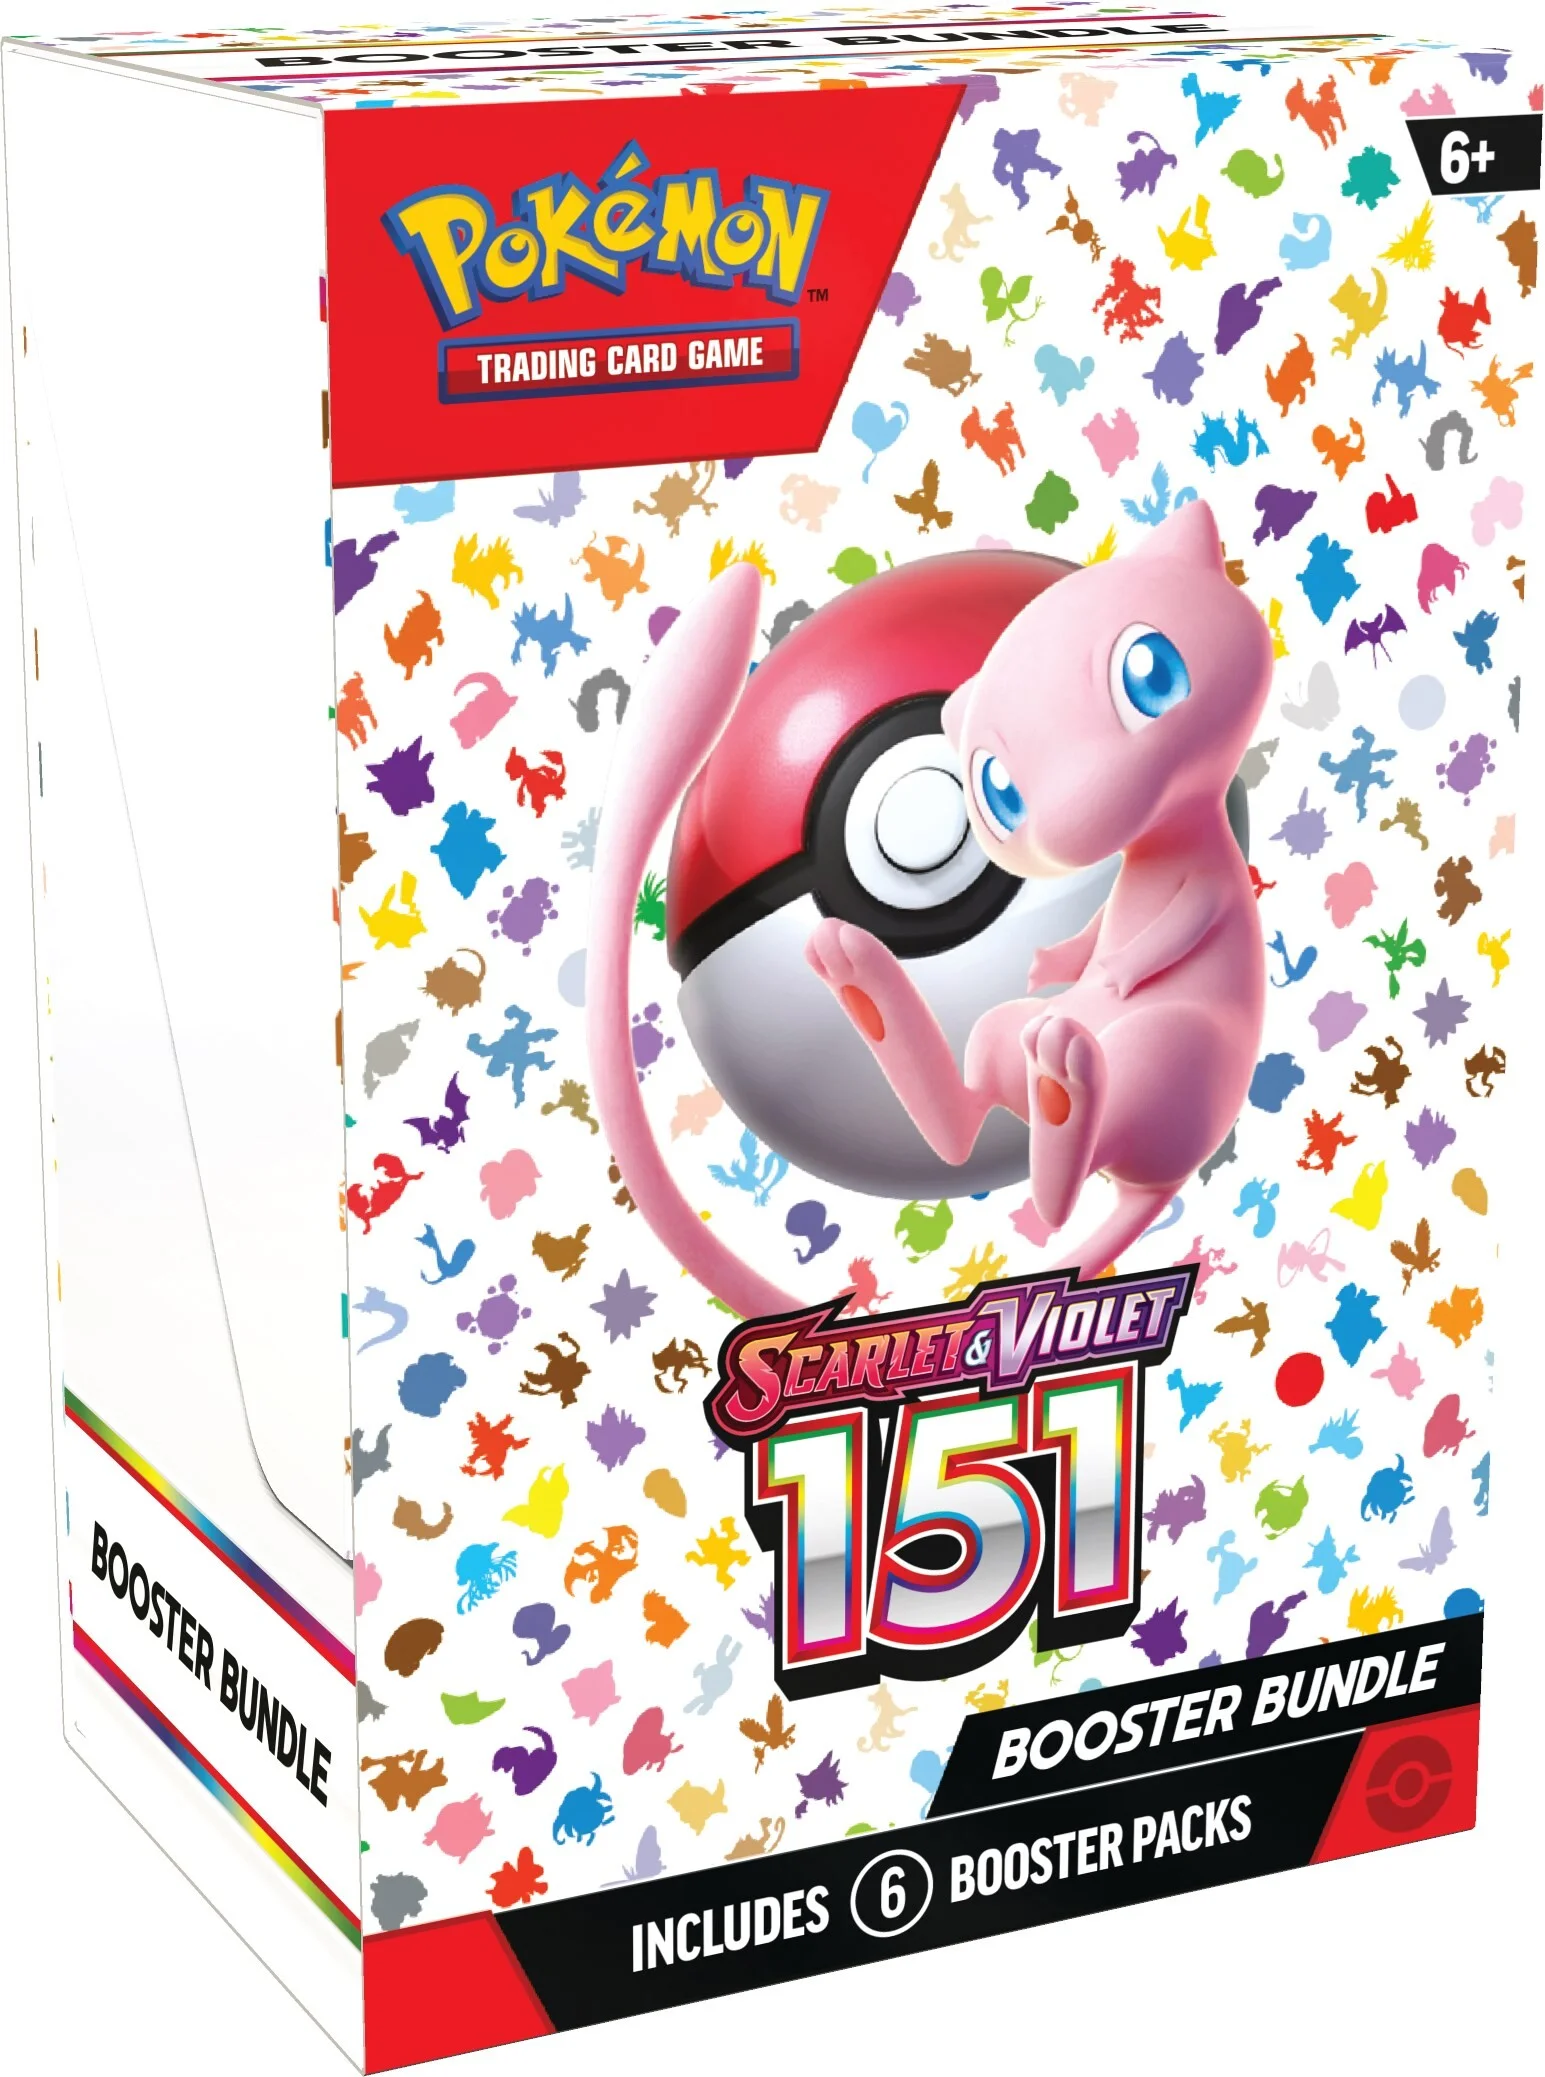 Pokémon TCG: Scarlet & Violet - 151 Booster Bundle - EN